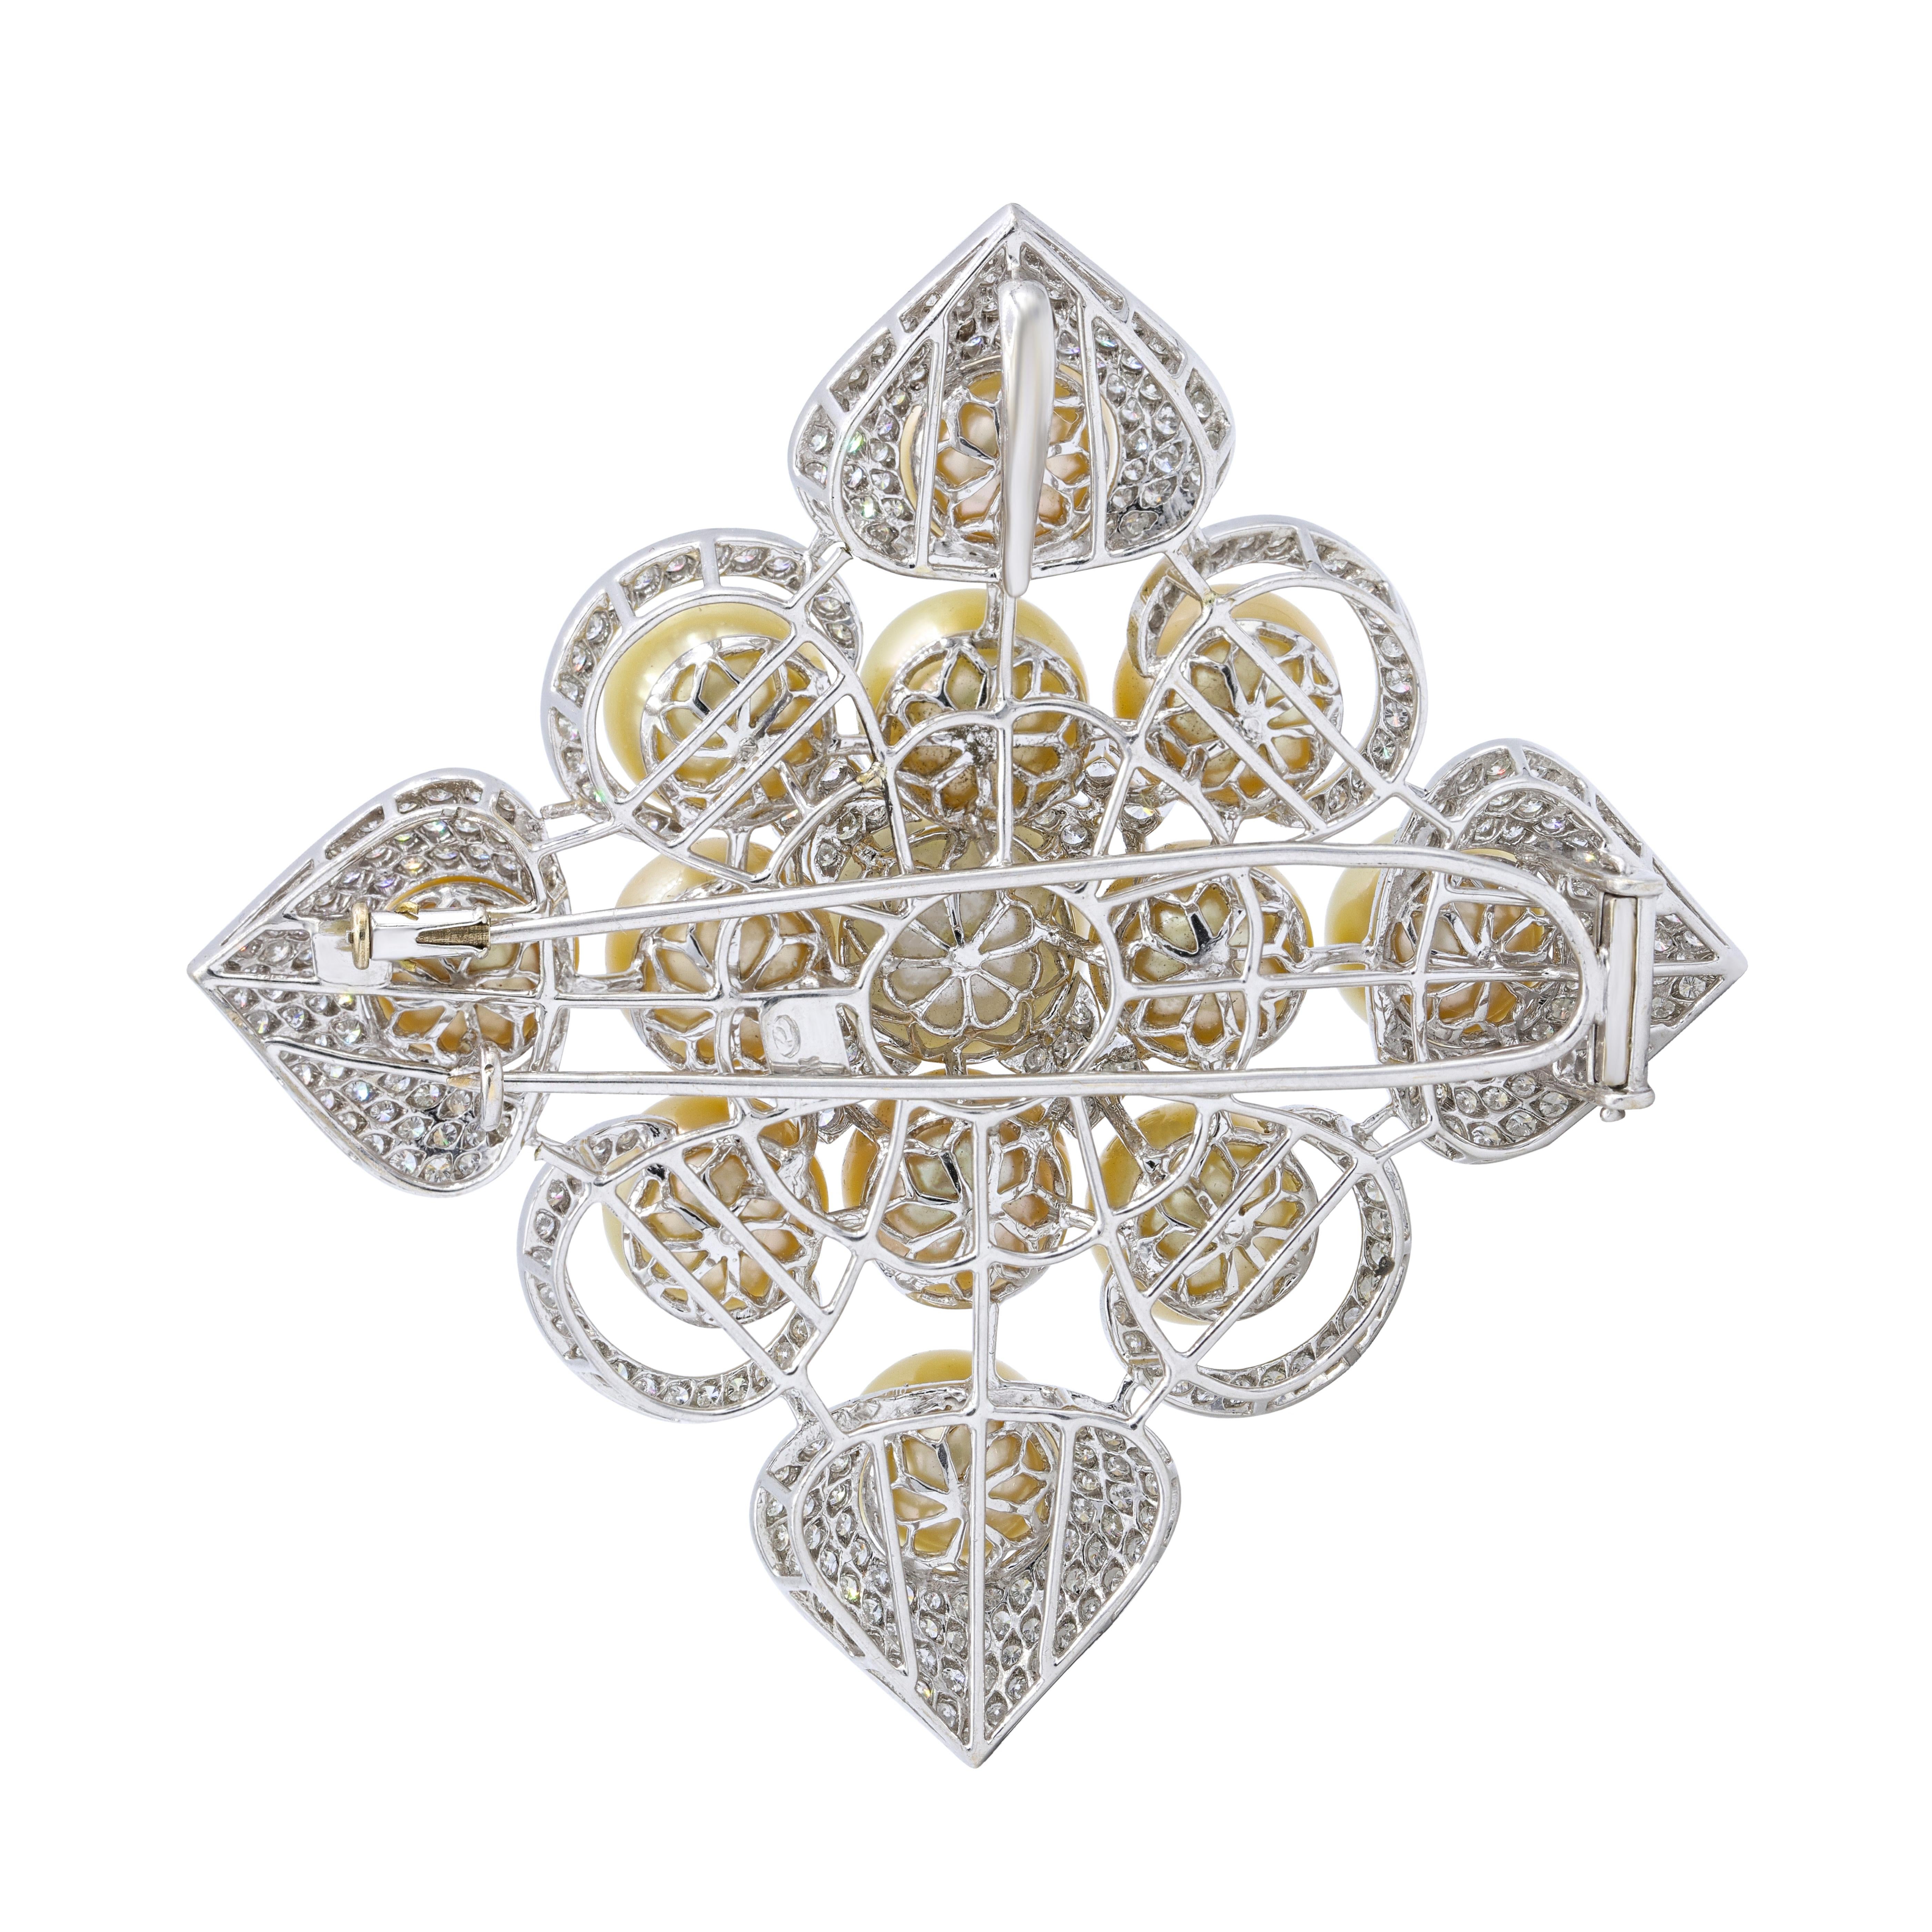 18K Weißgold Perlen und Diamanten Brosche verfügt über 5,00 cts von Diamanten und 1 weiße Perle in der Mitte und 12 Champagner Farbe Perlen 11-14mm.